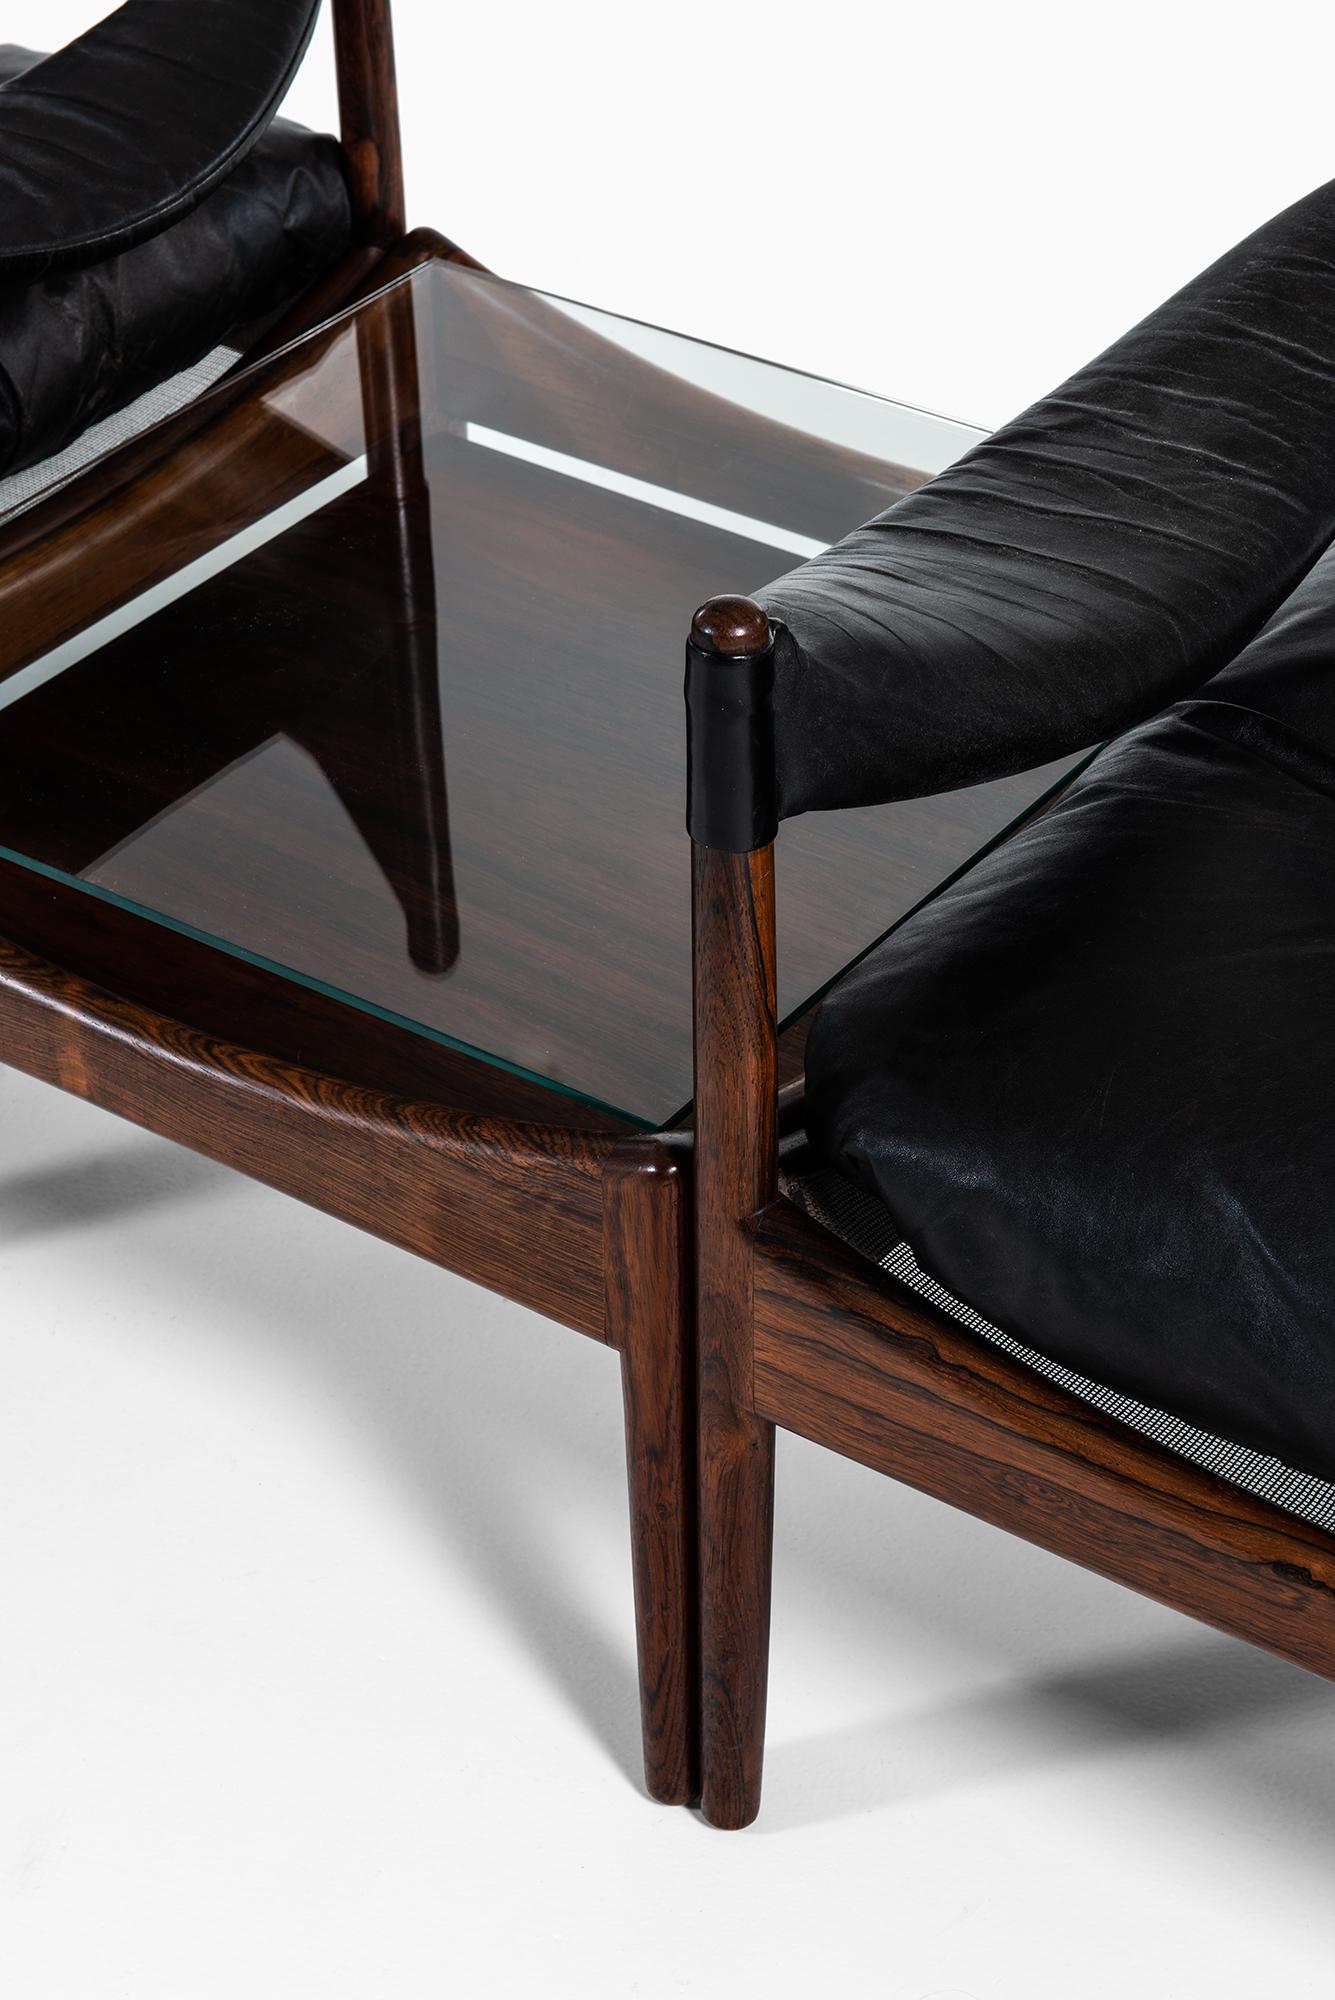 Seltenes Set von 3 Sesseln mit Beistelltisch Modell Modus entworfen von Kristian Solmer Vedel. Produziert von der Søren Willadsen møbelfabrik in Dänemark.